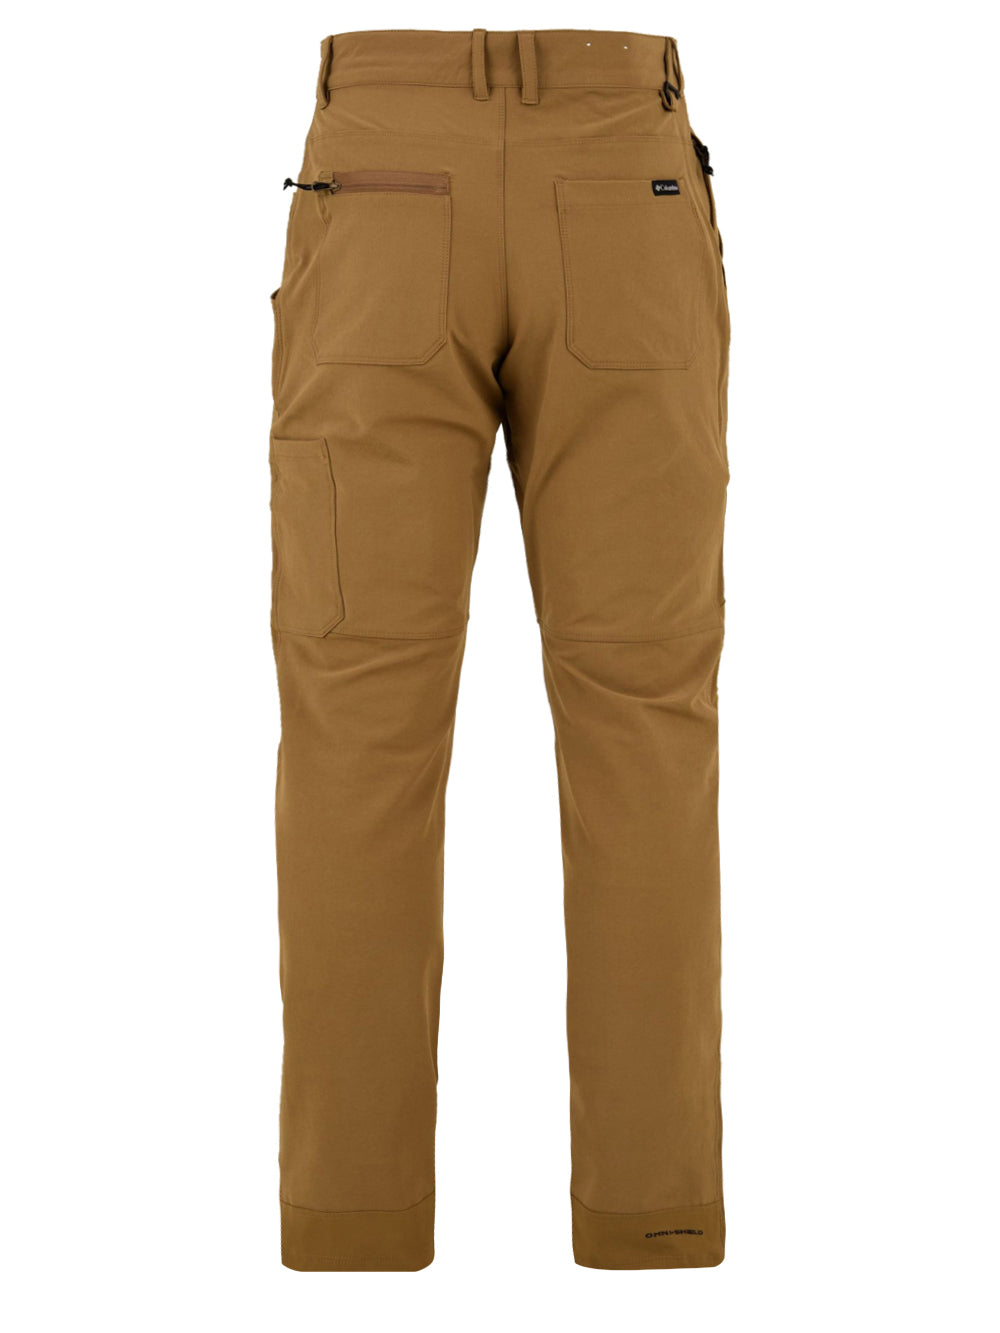 Immagine retro del pantalone da uomo in marrone Landroamer firmato Columbia,con tasche posteriori